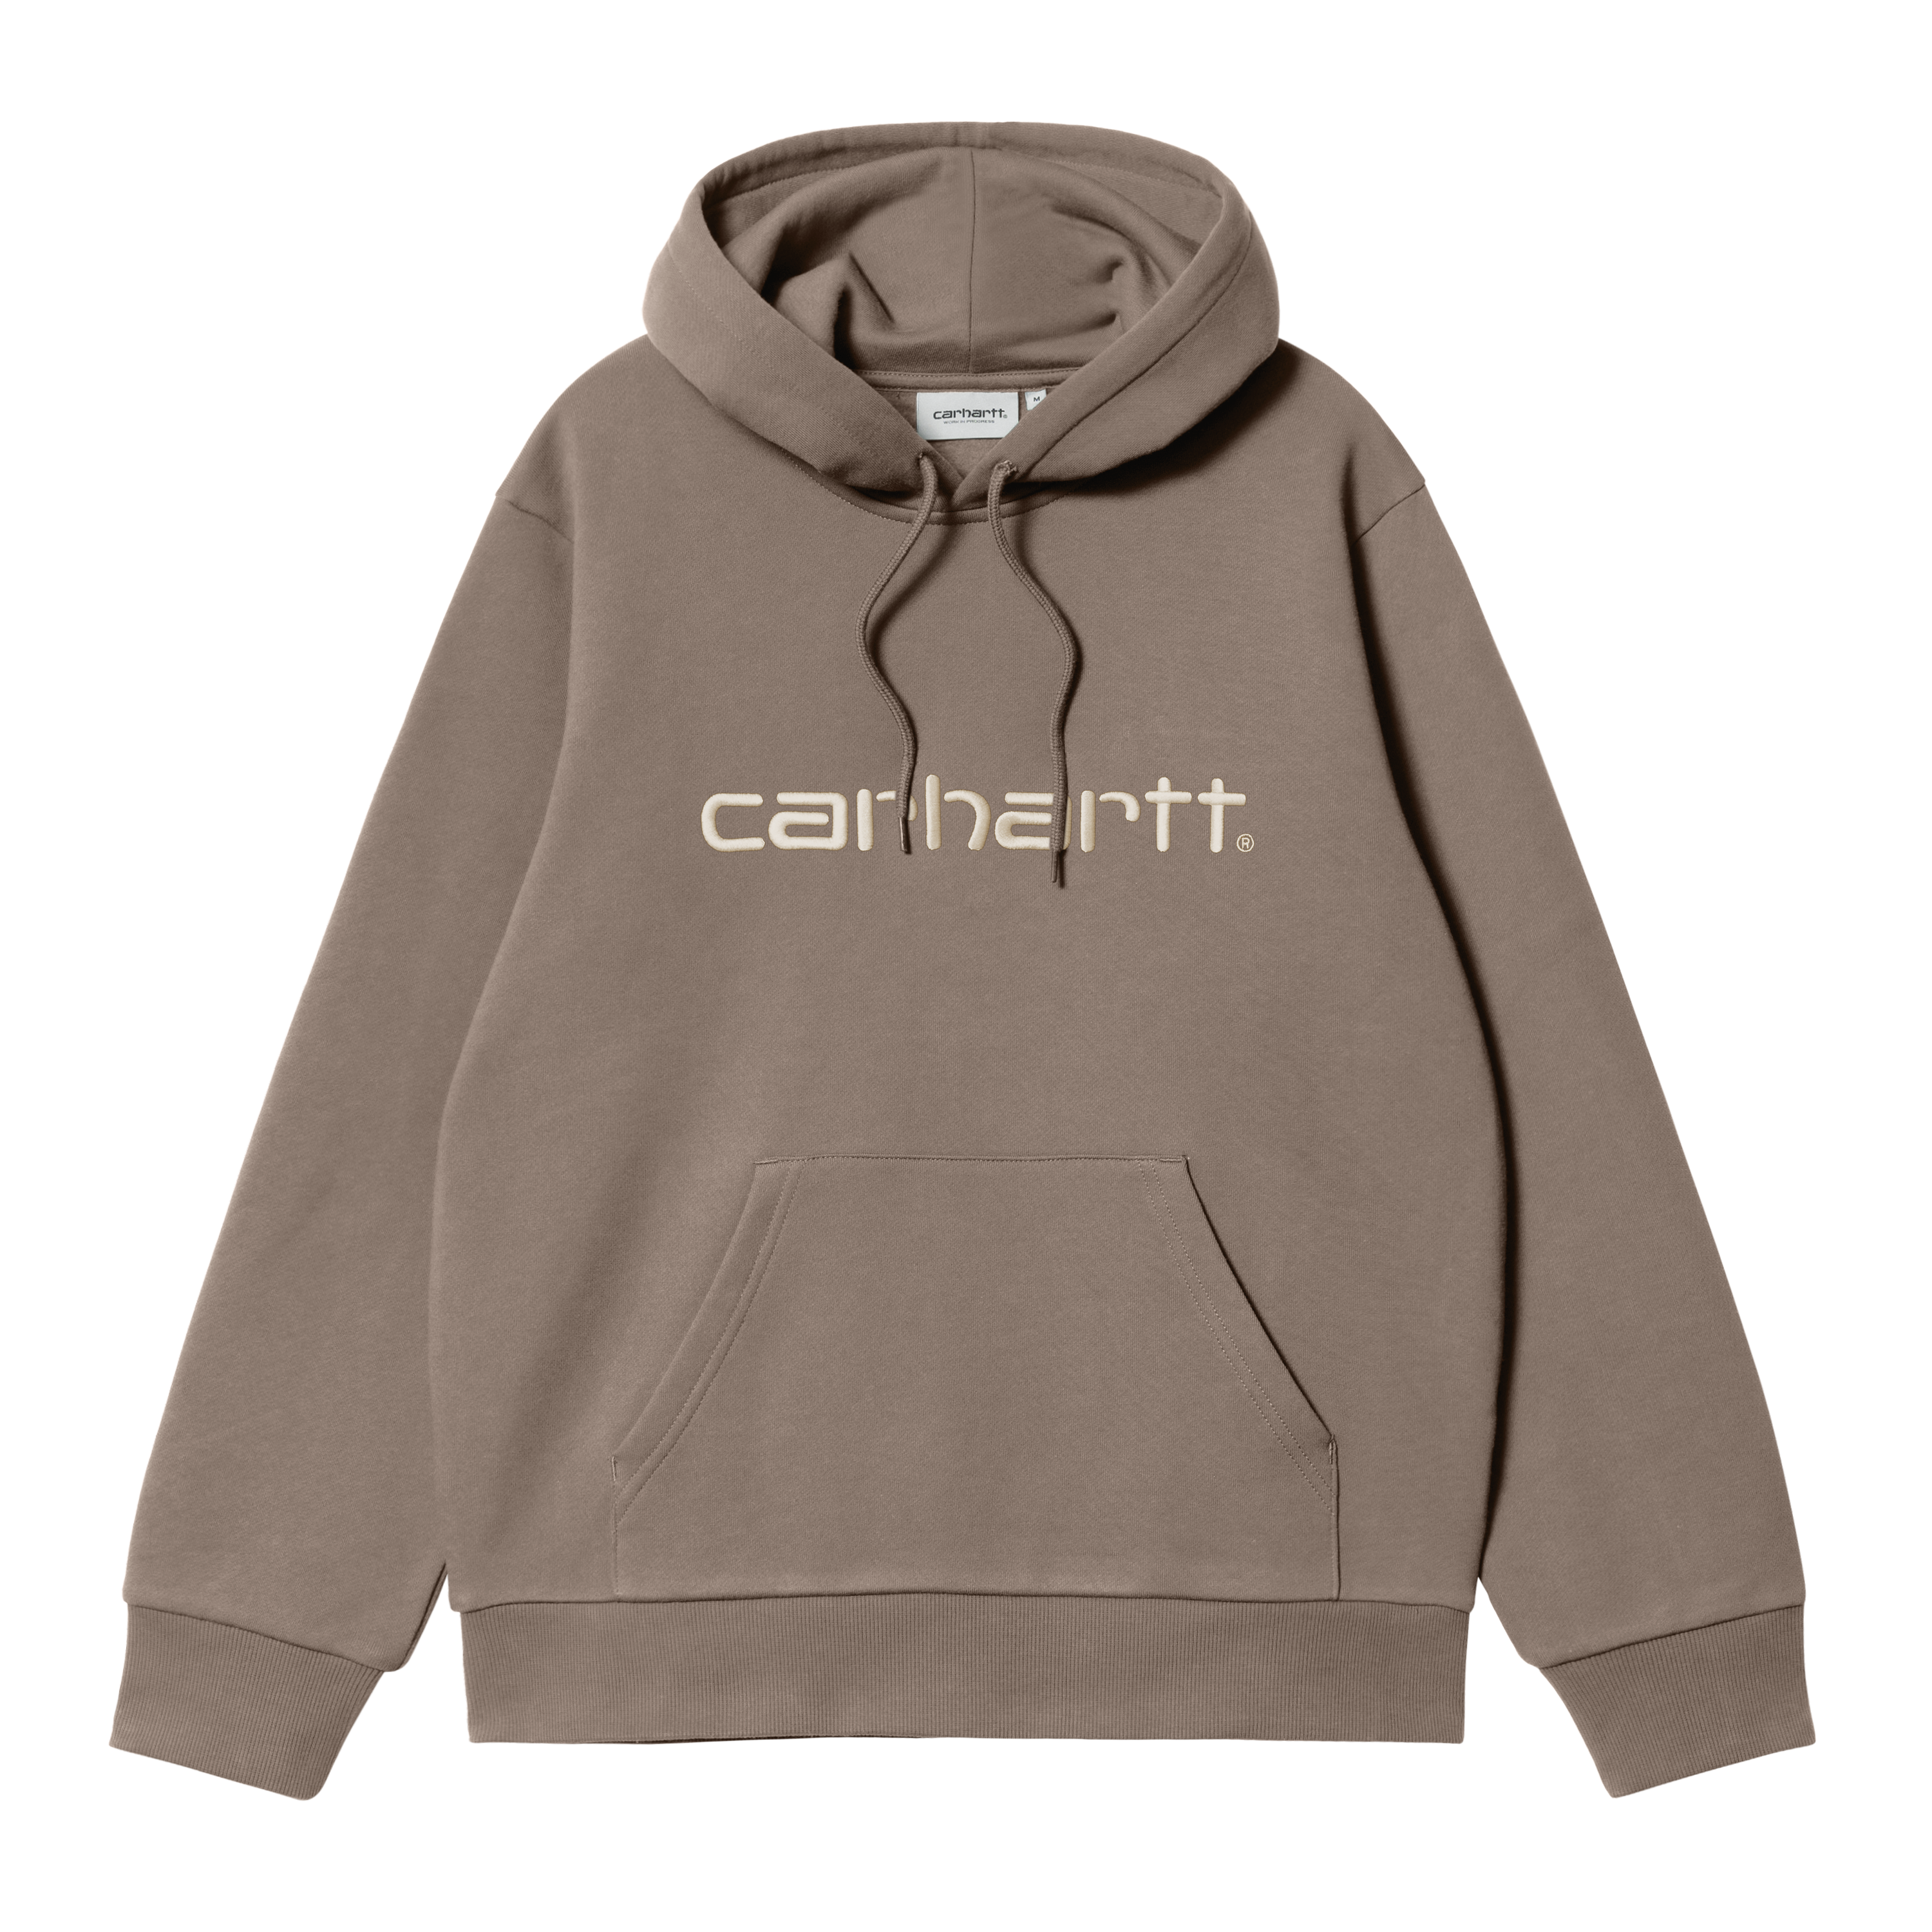 Carhartt WIP Hooded Carhartt Sweatshirt in Brown